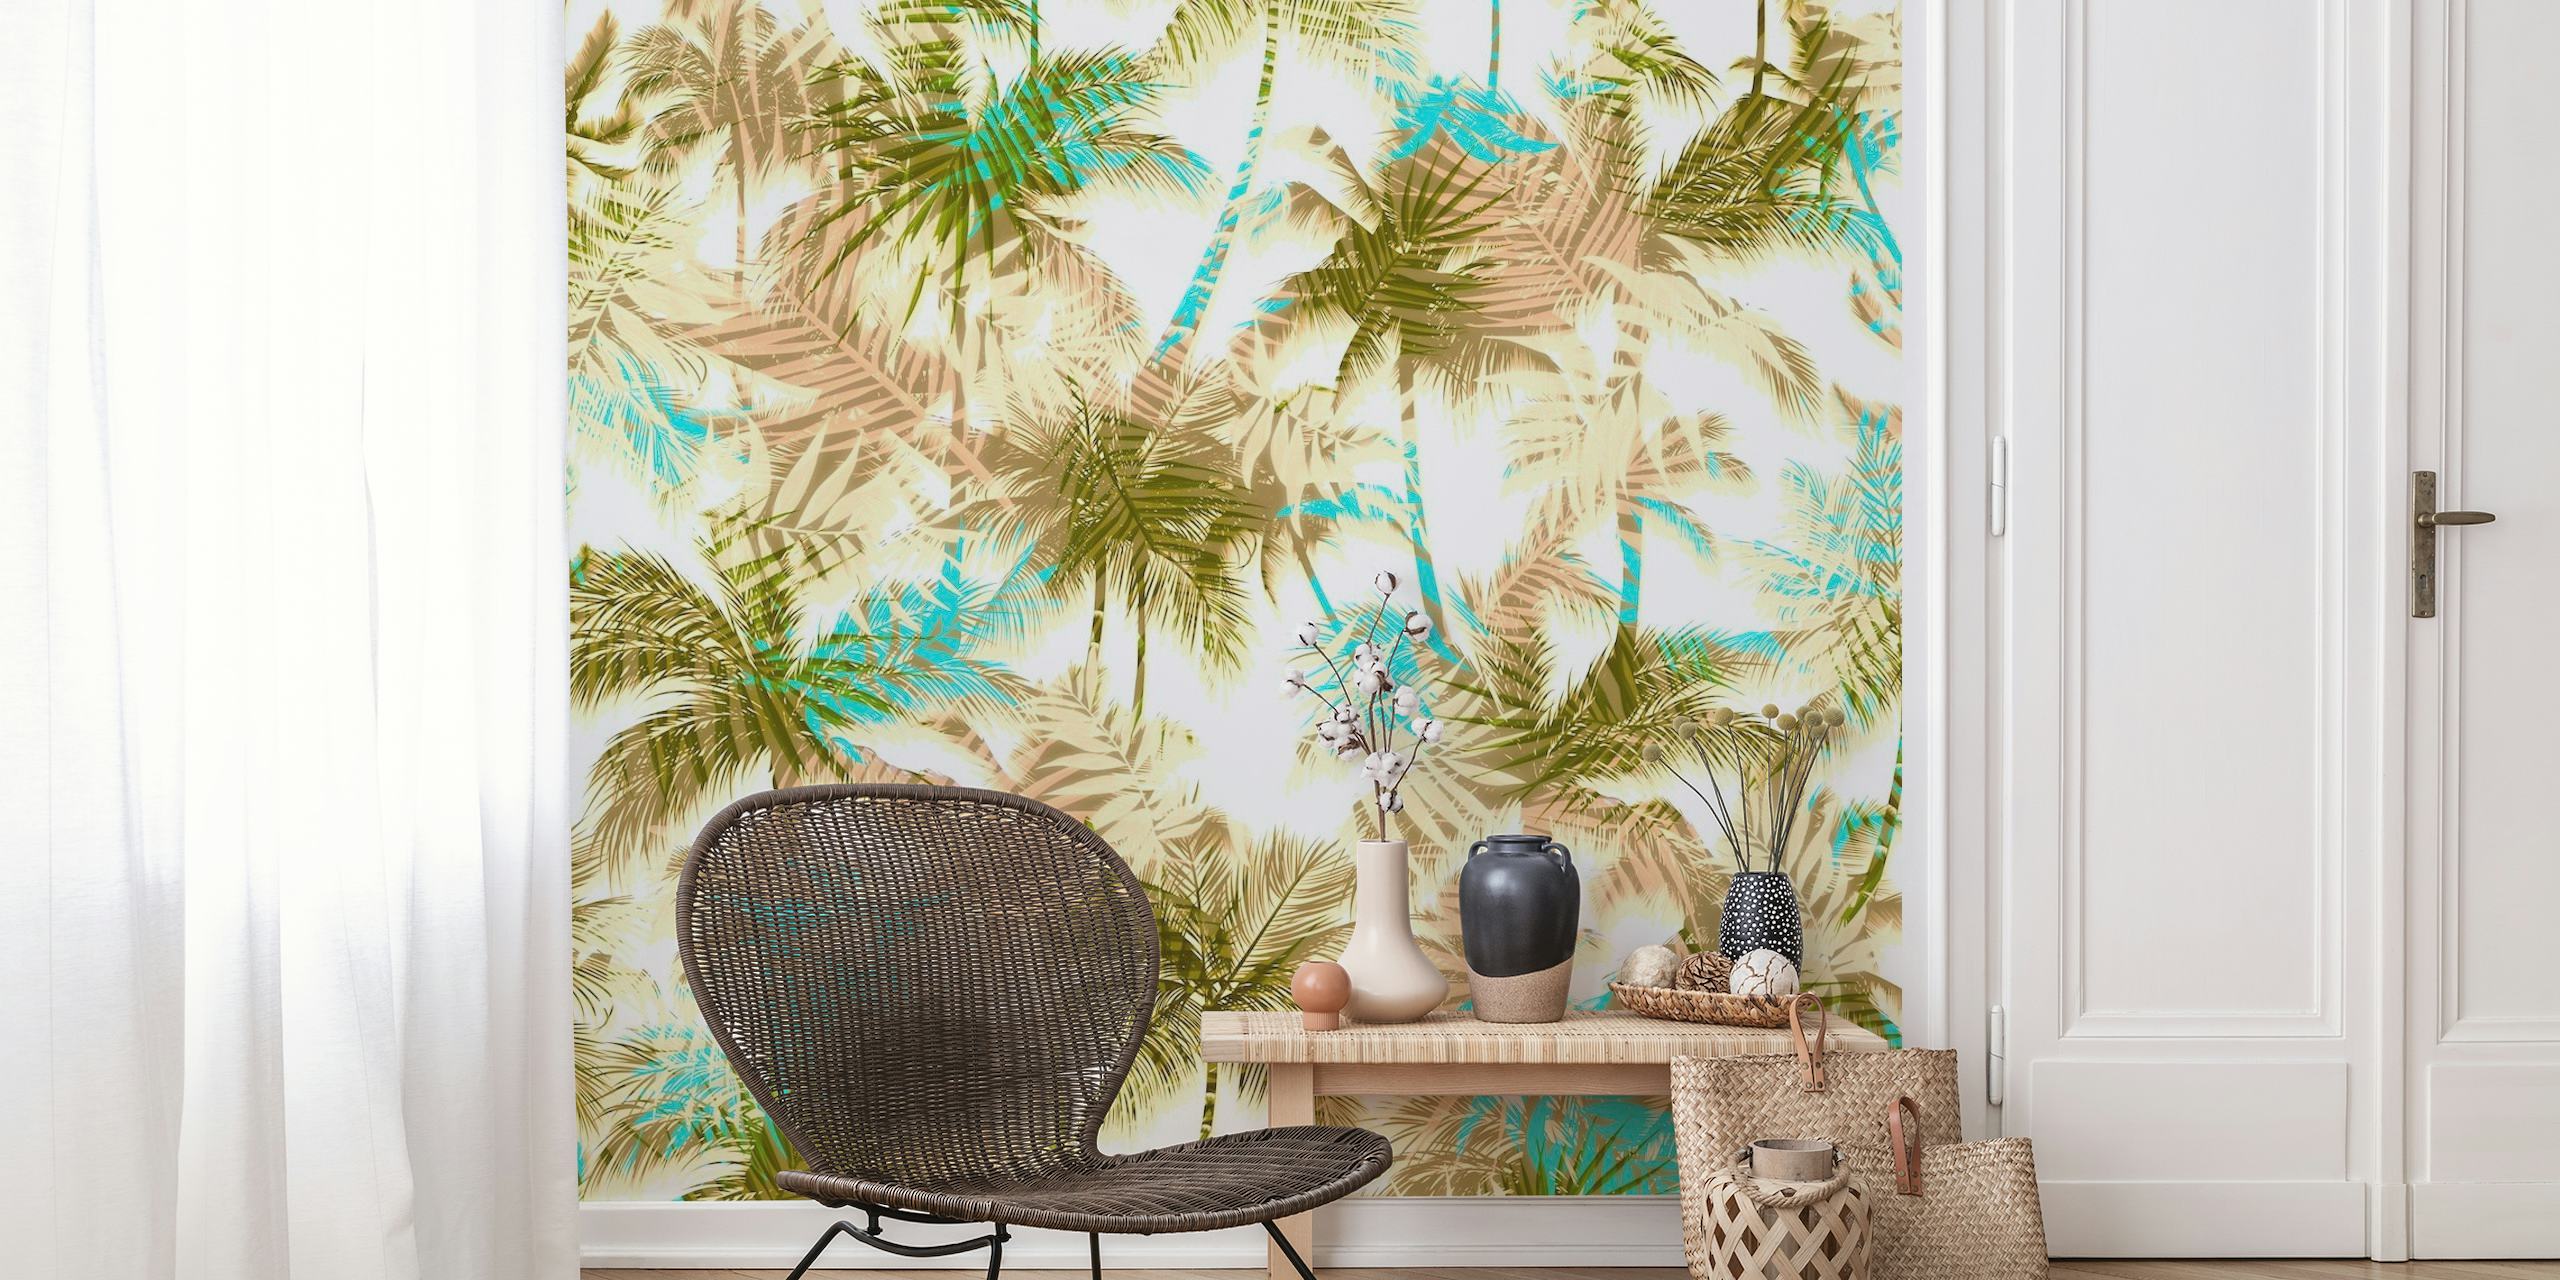 Apstraktni uzorci lišća isprepleteni s tropskim palmama u mekim, prigušenim tonovima za zidni dekor